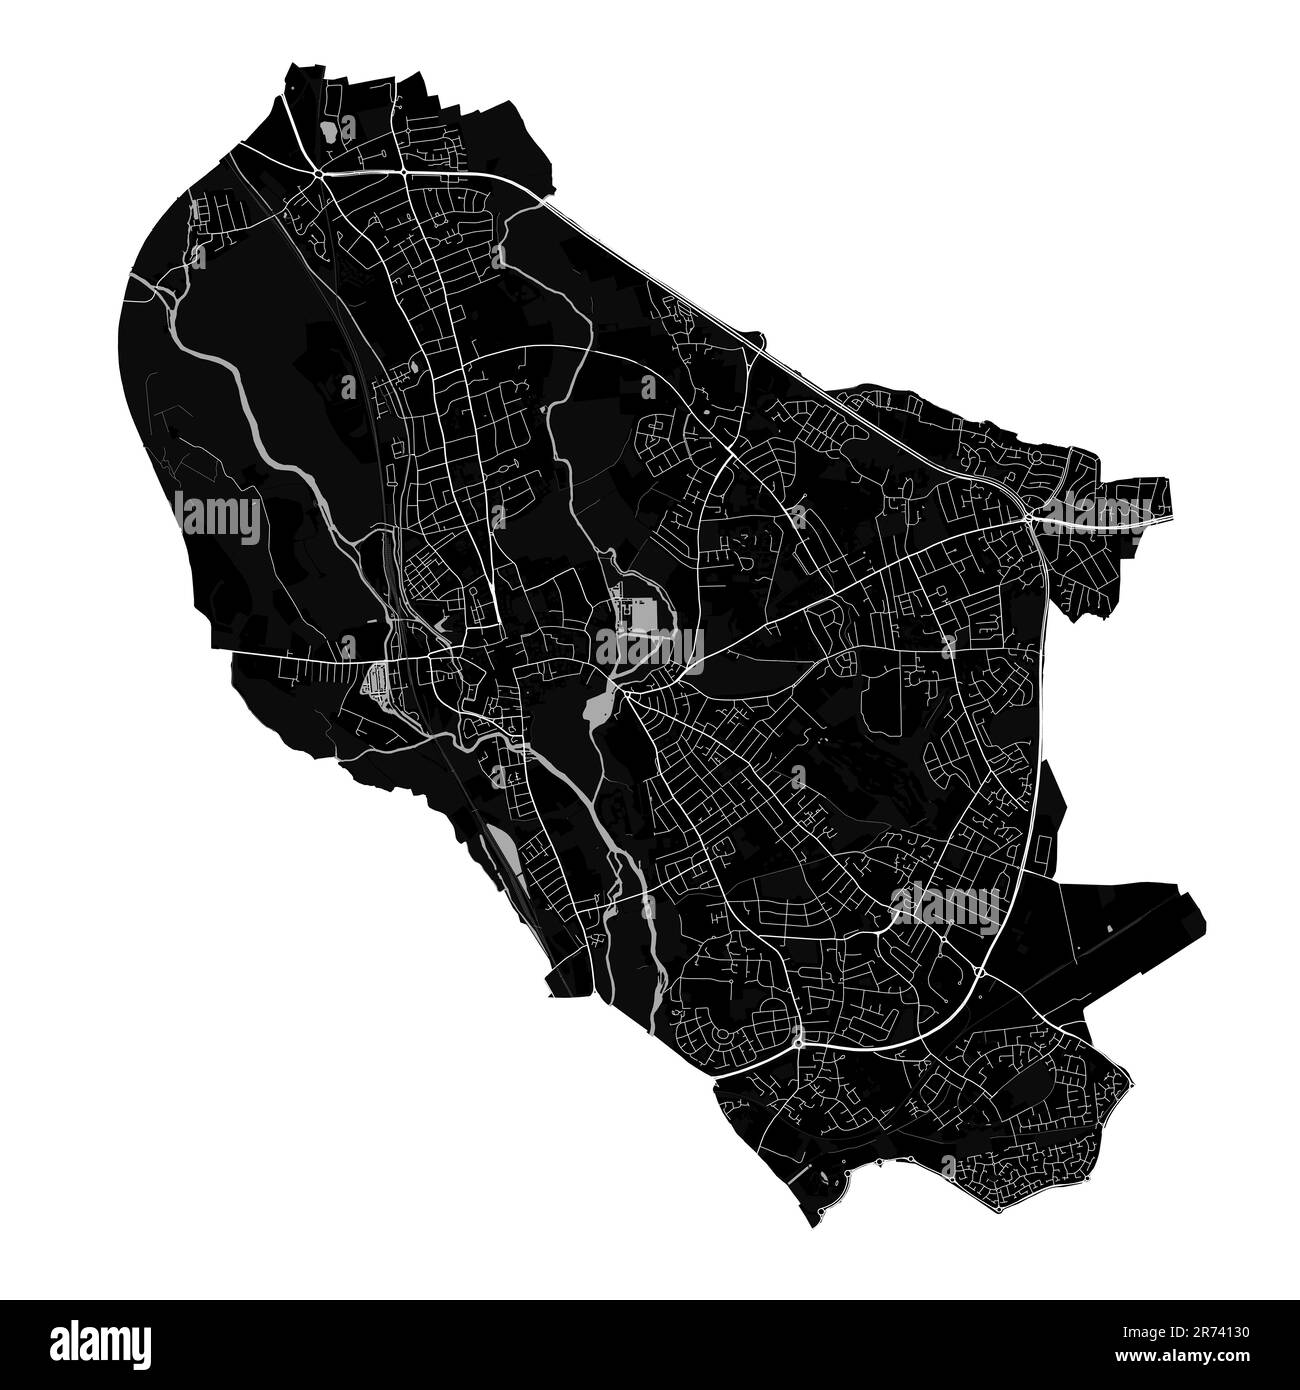 Schwarze Karte von Oxford City, England, Großbritannien. Detaillierte Verwaltungskarte mit Straßen und Eisenbahnen, Parks und Flüssen. Stadtgrenzen. Stock Vektor